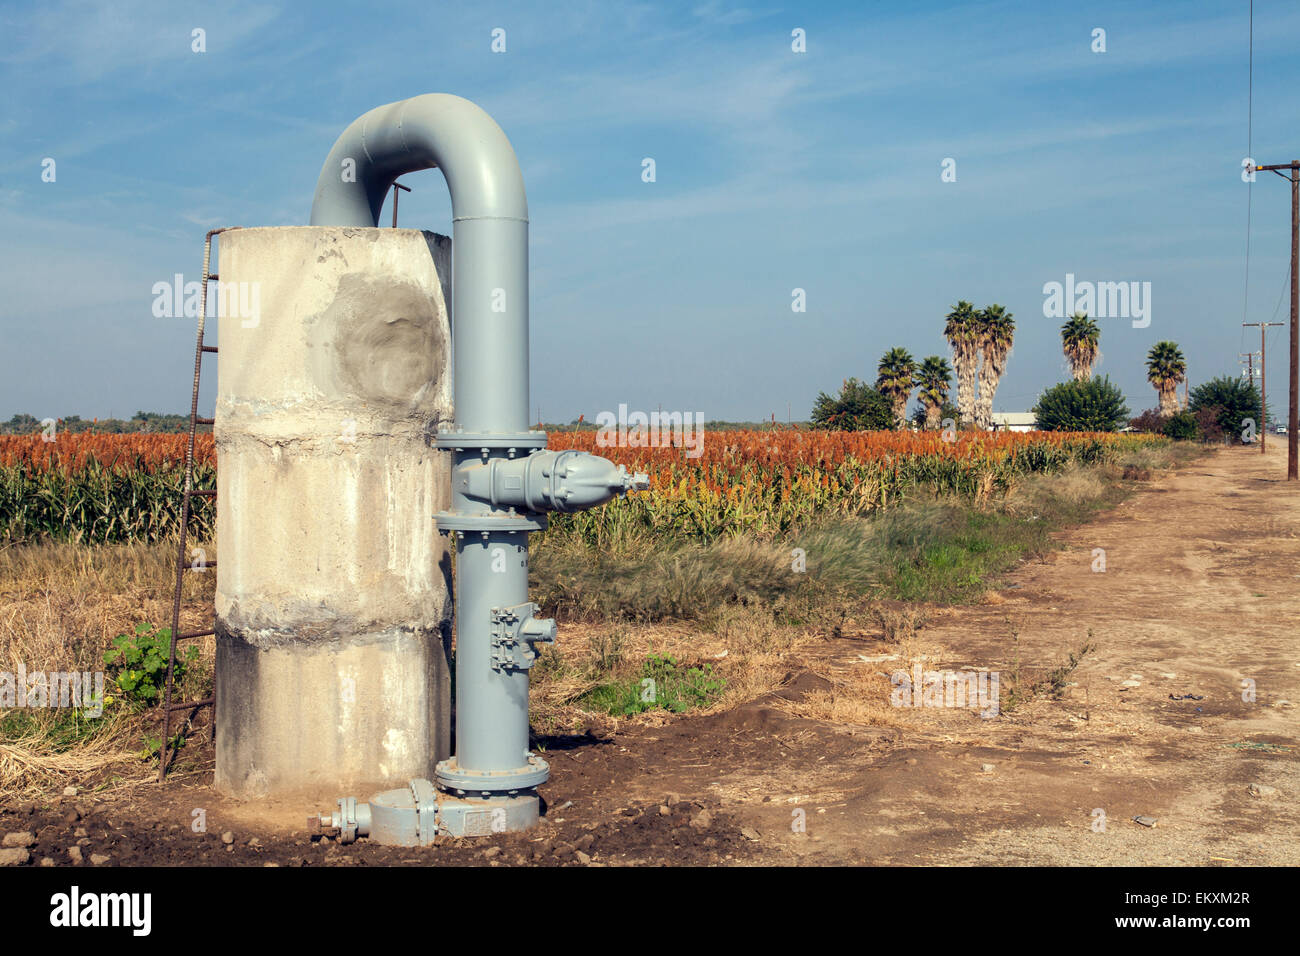 Acque sotterranee bene e il tubo rigido per l'irrigazione delle colture. Porterville, Tulare County, San Joaquin Valley, California, Stati Uniti d'America Foto Stock